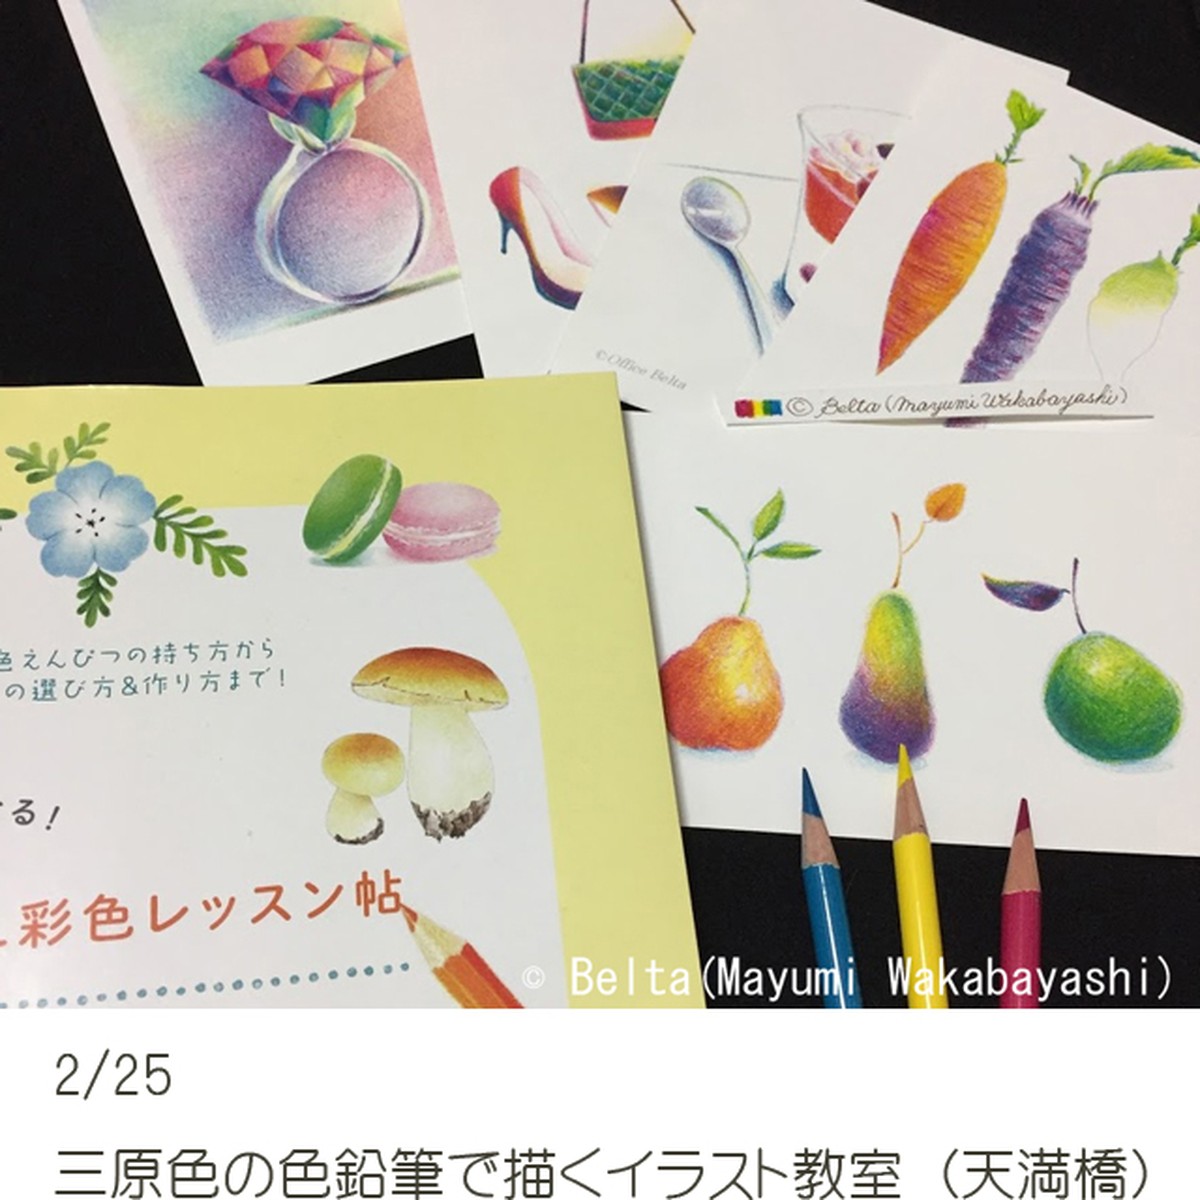 教室 2月25日 三原色の色鉛筆で描くイラスト教室 大阪 天満橋 カラーショップbelta